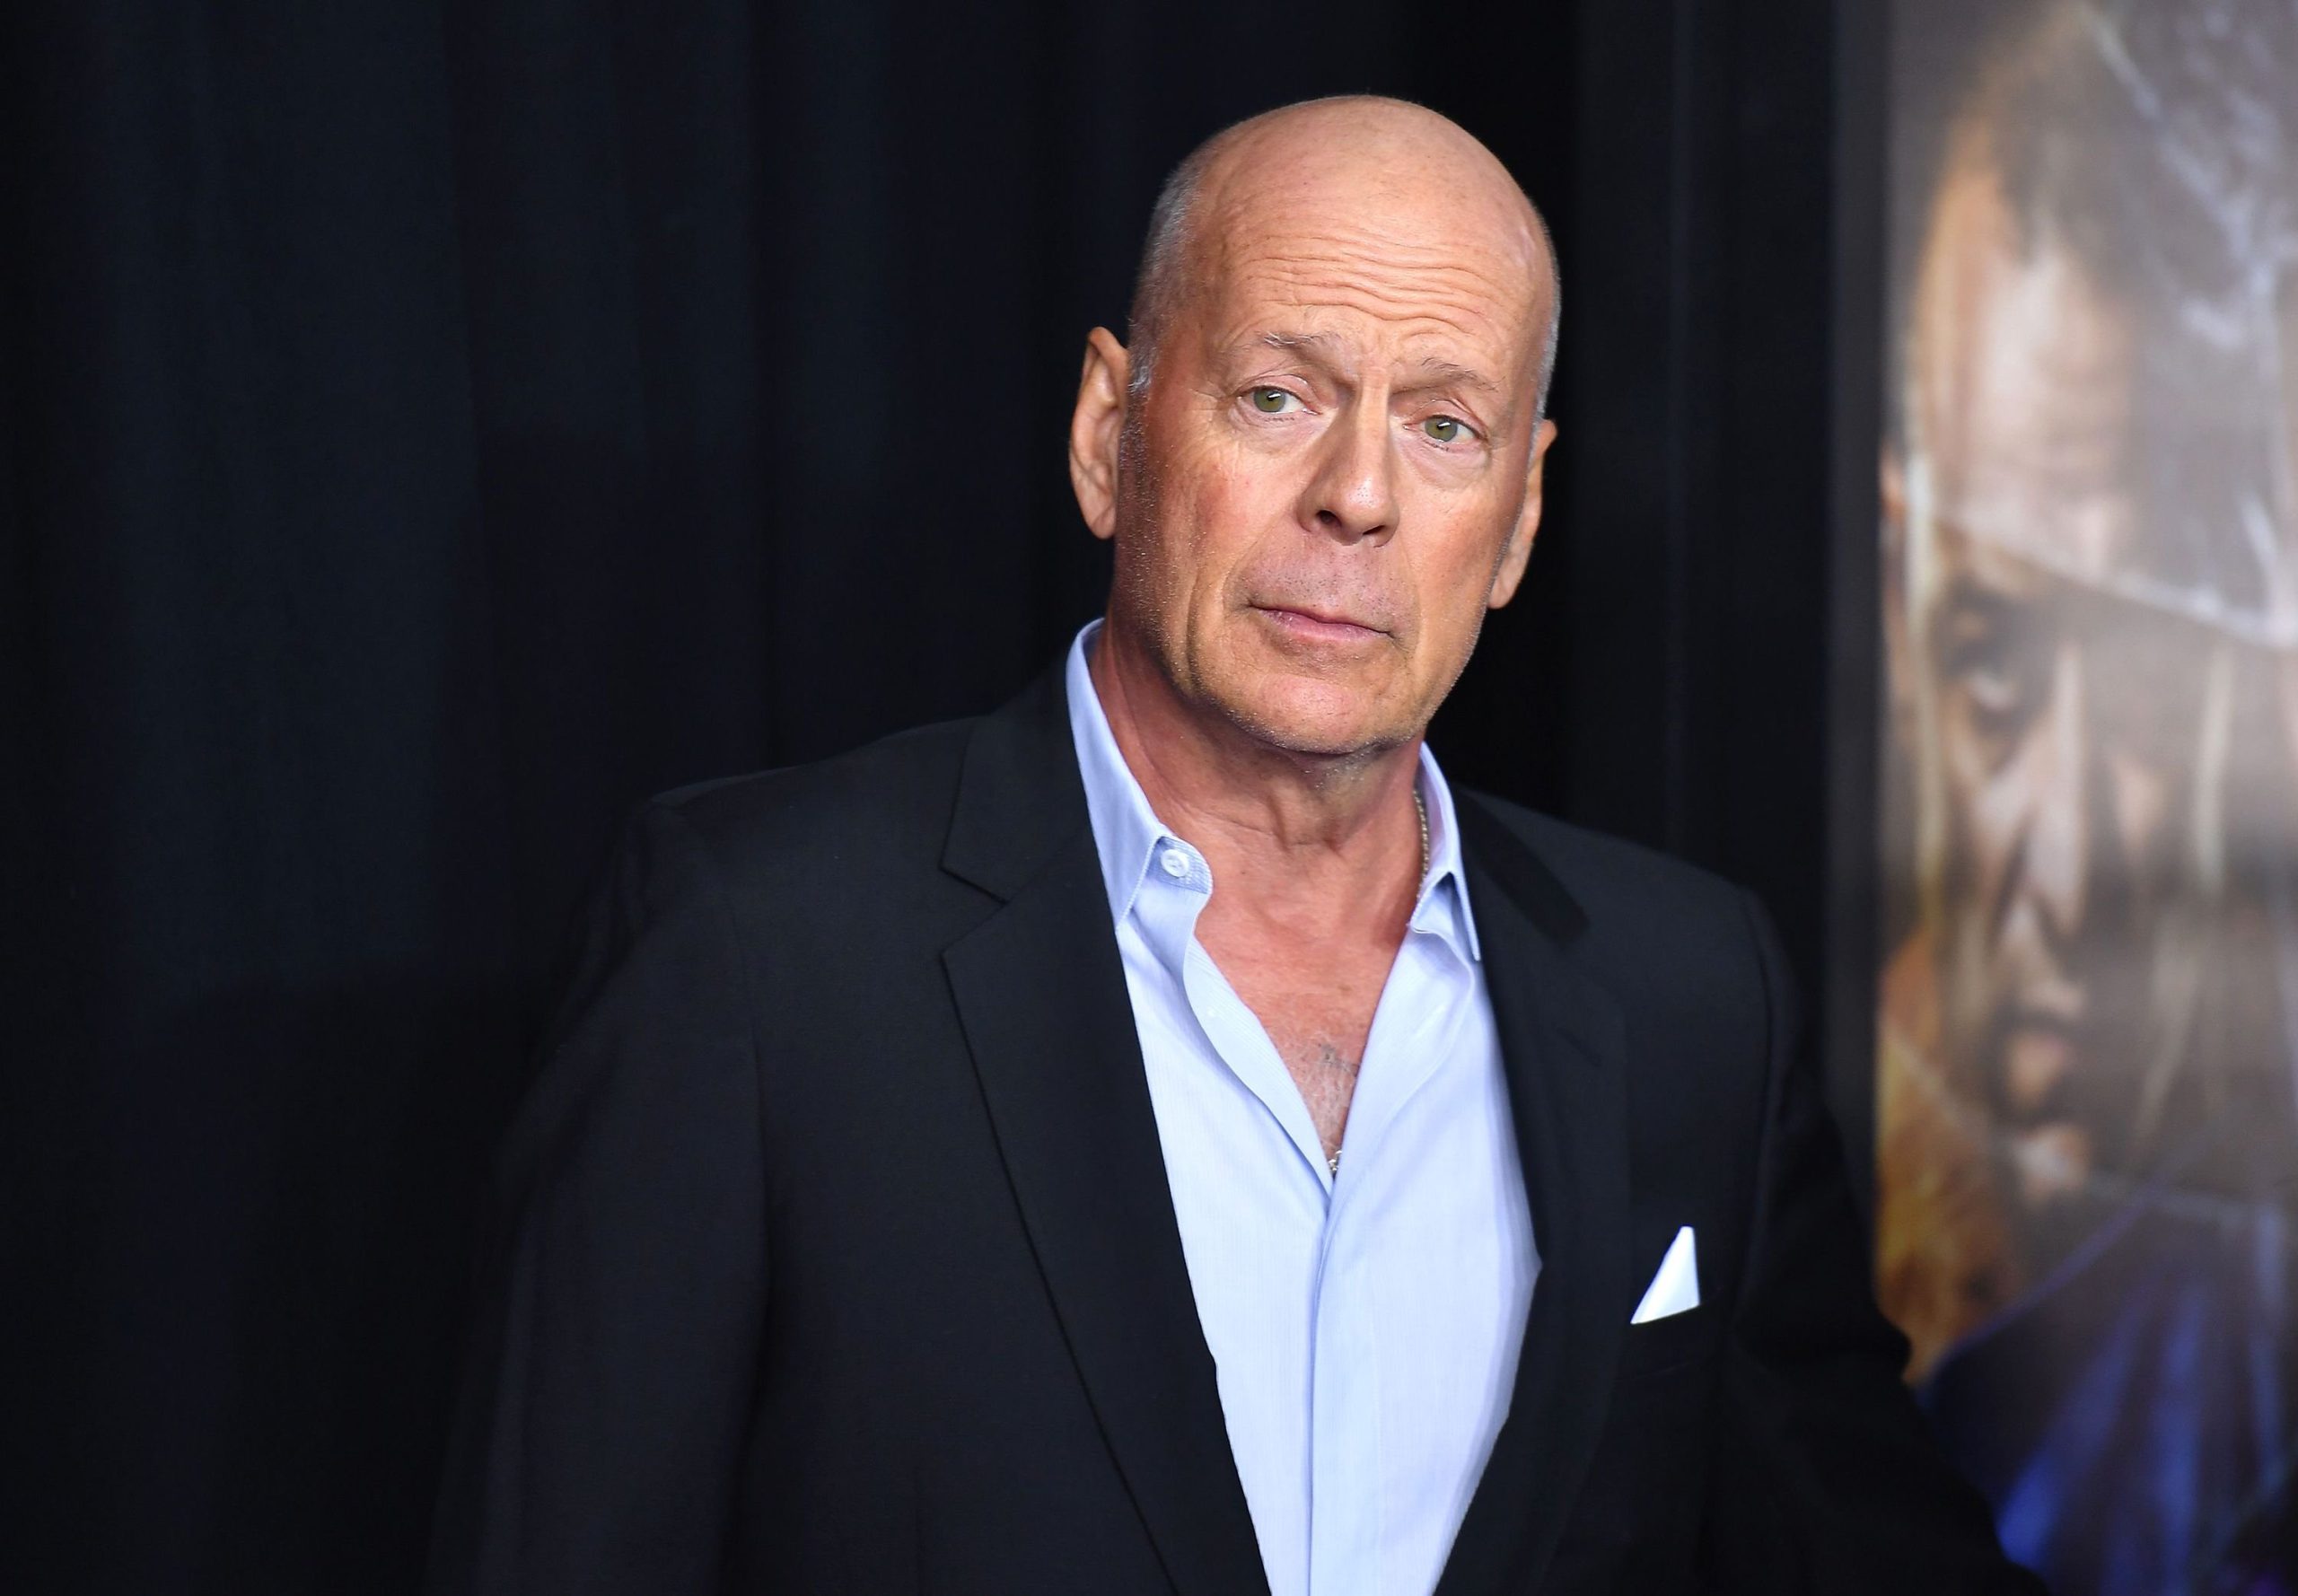  Celebrul actor Bruce Willis suferă de demență, a anunțat familia acestuia